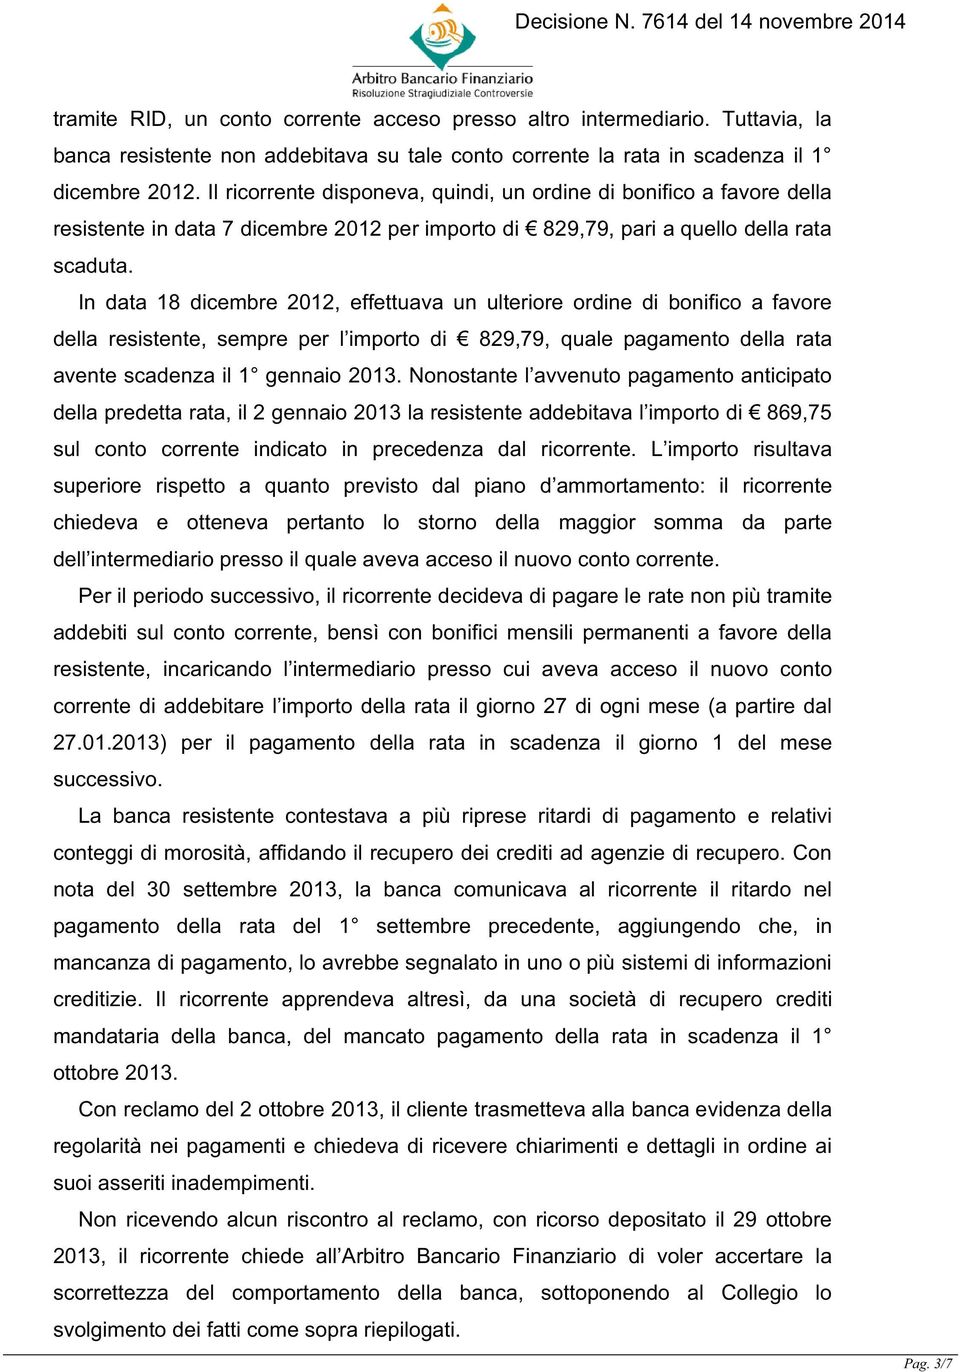 In data 18 dicembre 2012, effettuava un ulteriore ordine di bonifico a favore della resistente, sempre per l importo di 829,79, quale pagamento della rata avente scadenza il 1 gennaio 2013.